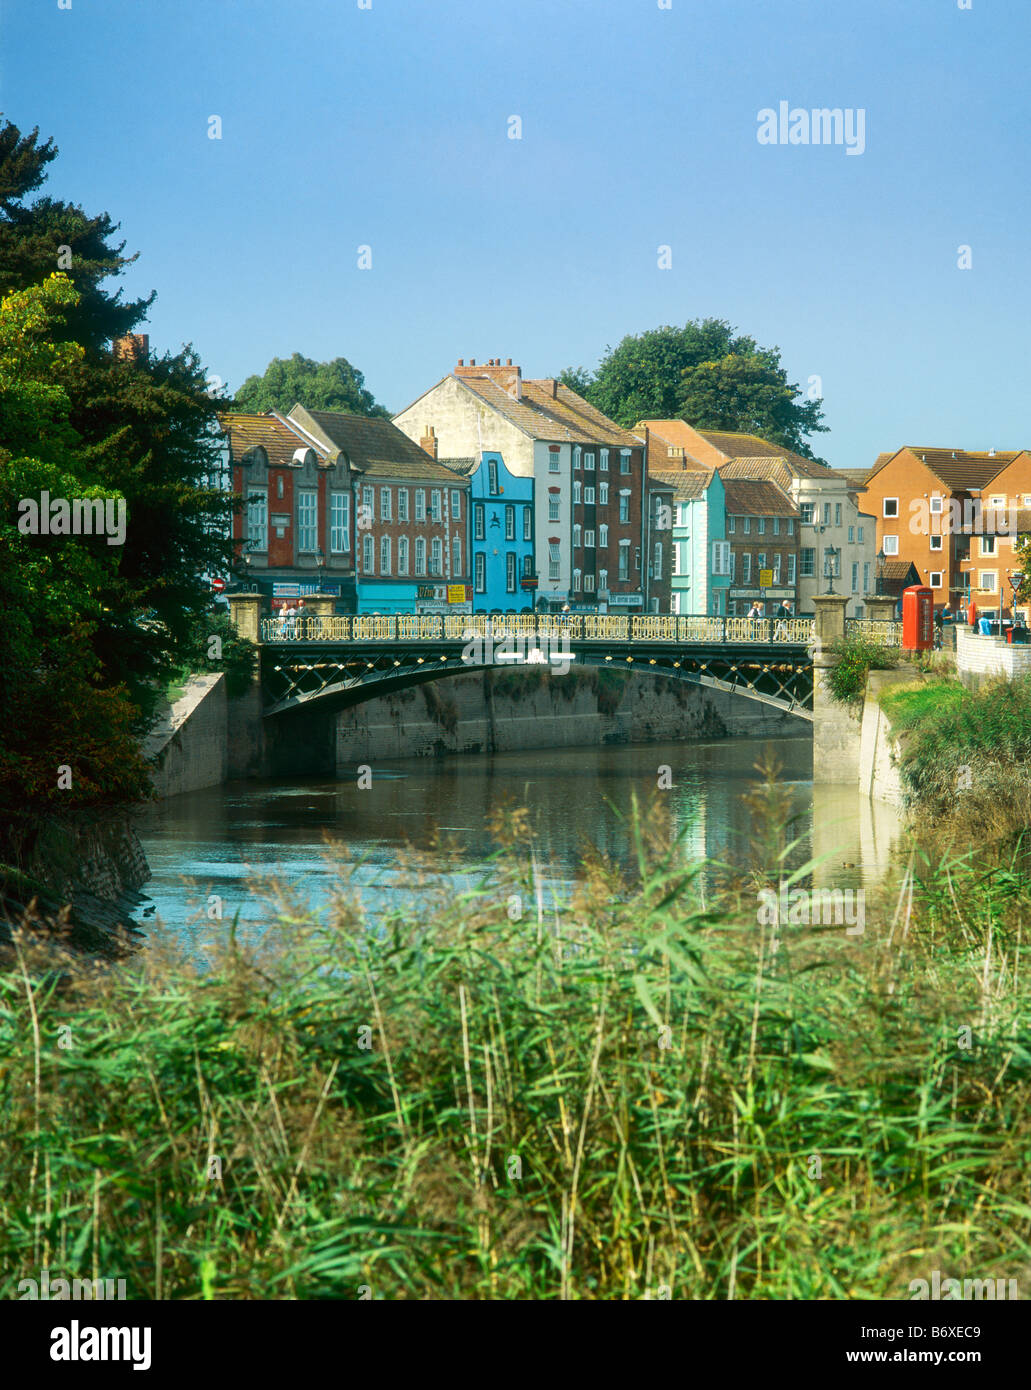 La ville de fer de fonte ou pont Bridgwater Le Pont de la rivière Parrett à Bridgwater, Somerset, Angleterre avec West Quay au-delà. Banque D'Images